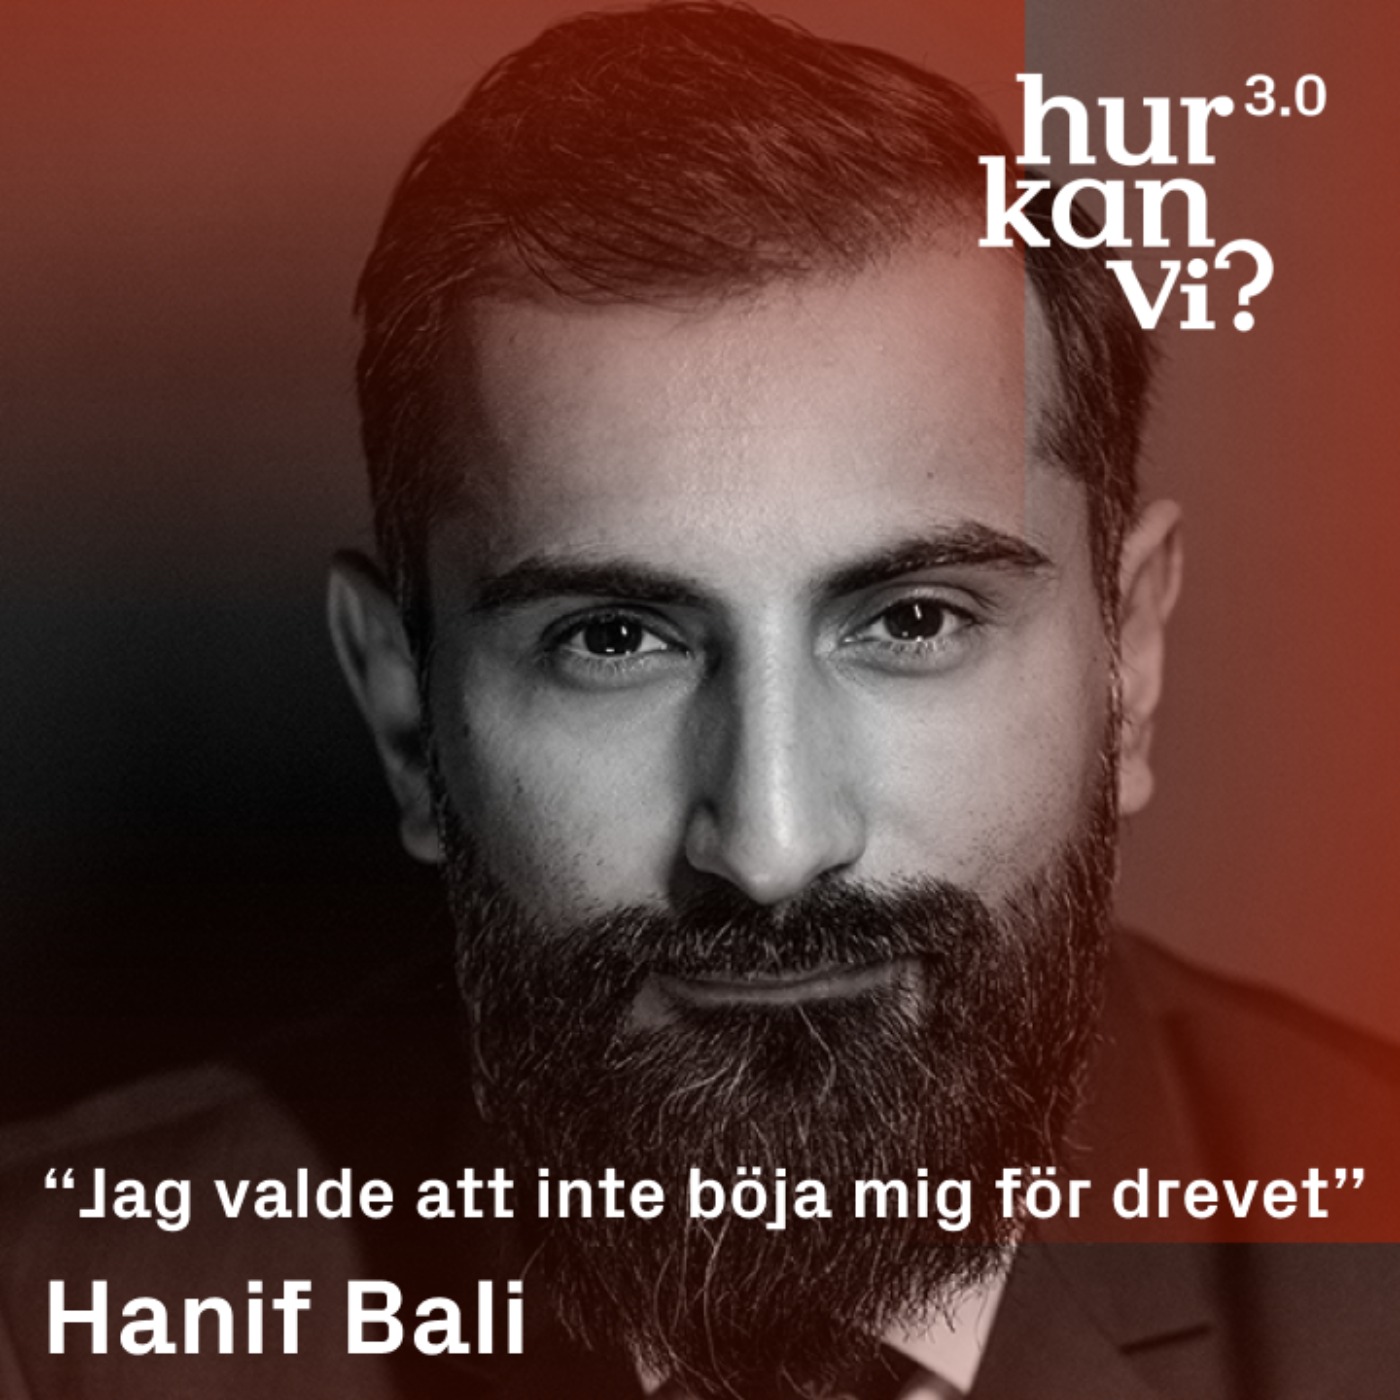 Hanif Bali - DEL 1 - “Jag valde att inte böja mig för drevet”